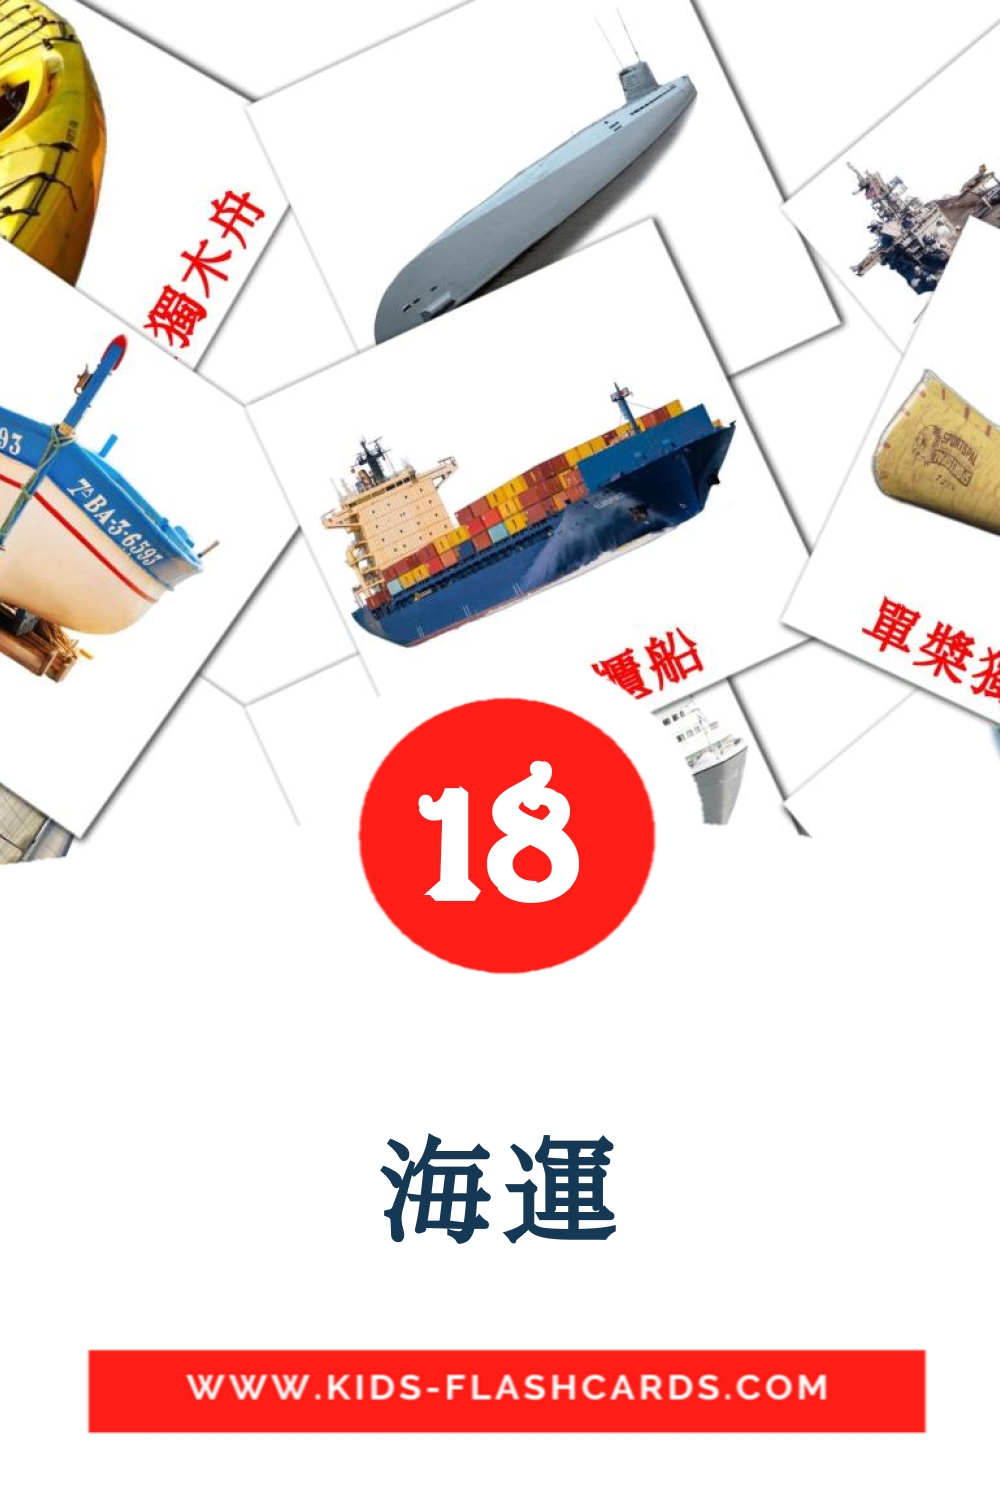 海運 на китайский(Традиционный) для Детского Сада (18 карточек)